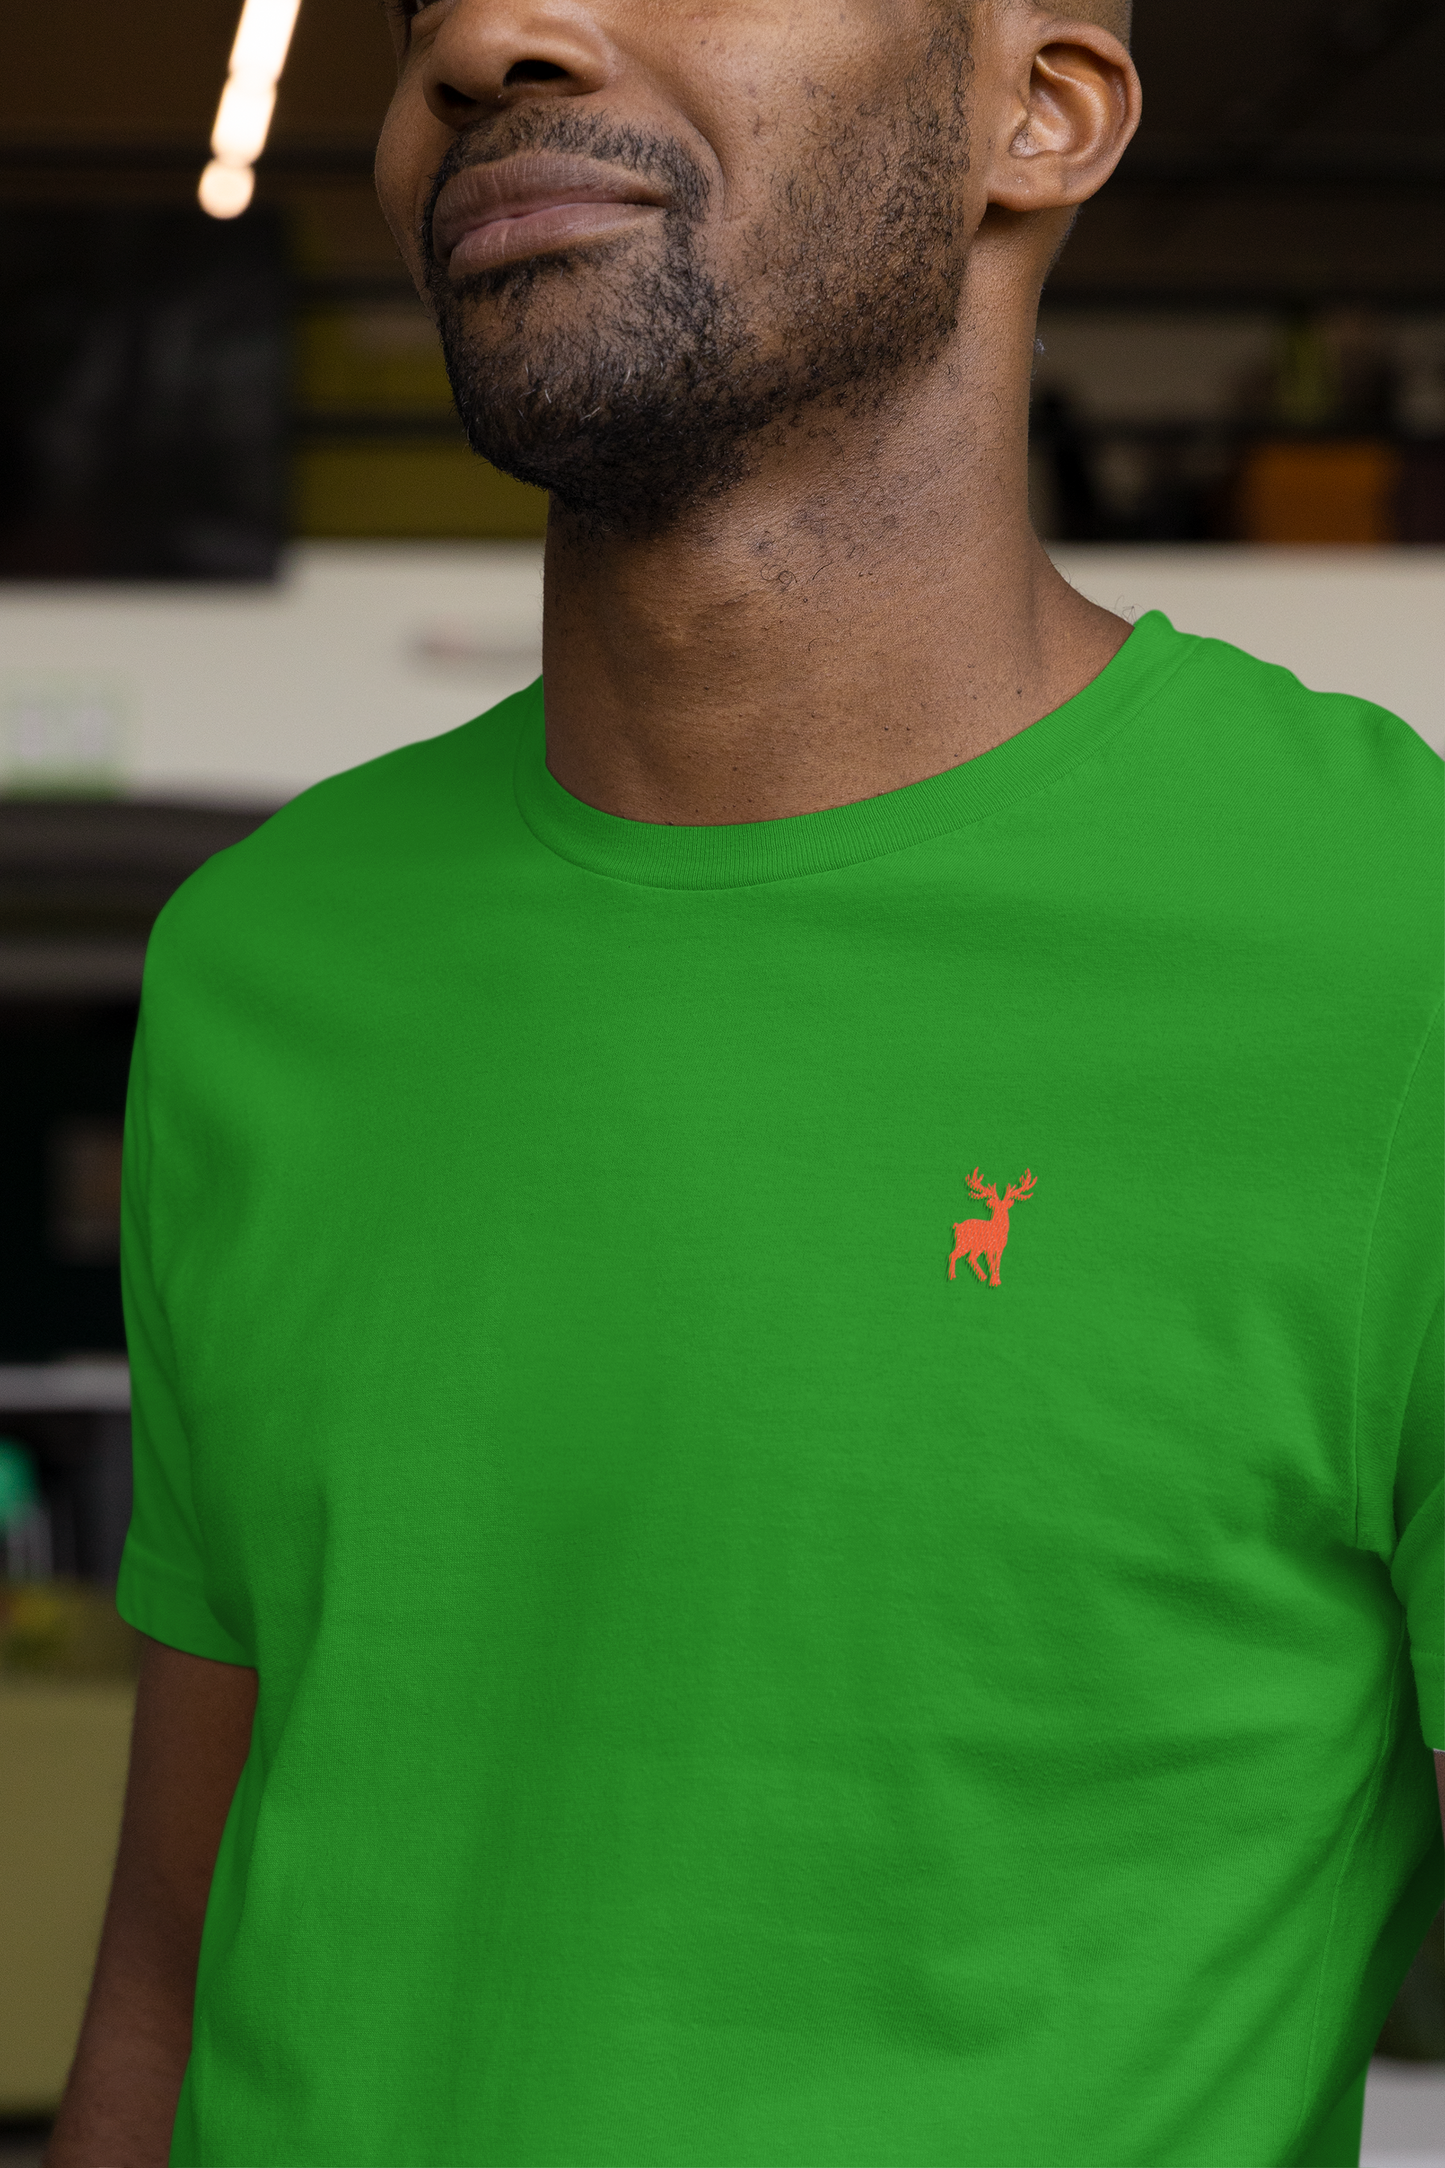 ATOM Deer Mascot Classic Embroidered Orange Logo Basic Flag Green T-Shirt For Men